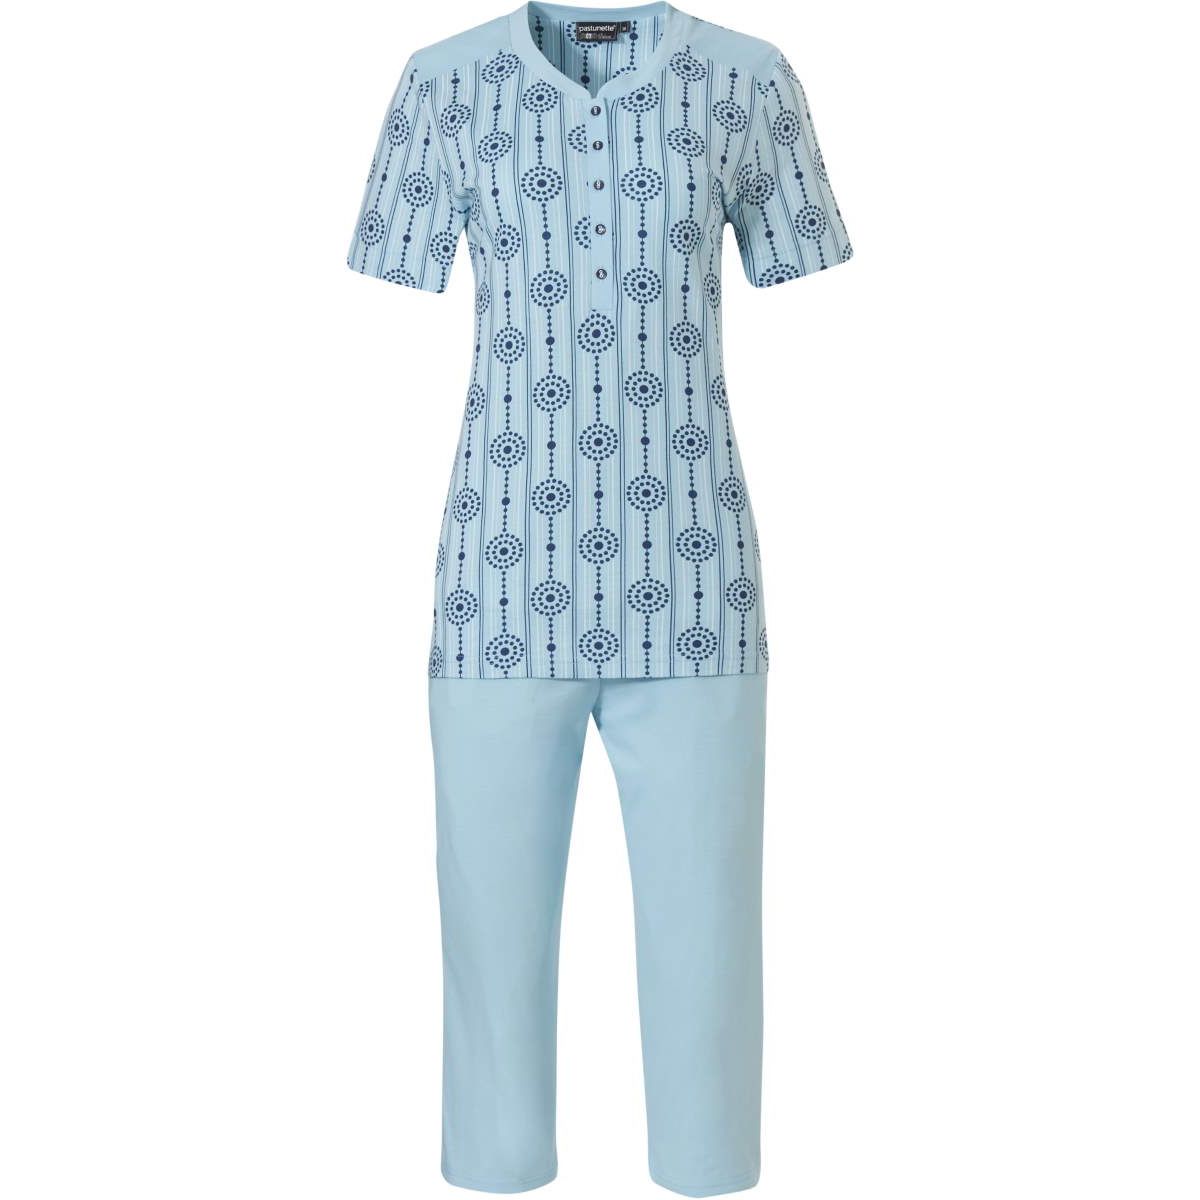 Pastunette de luxe pyjama met capri broek - 25221-338-4 - Turquoise